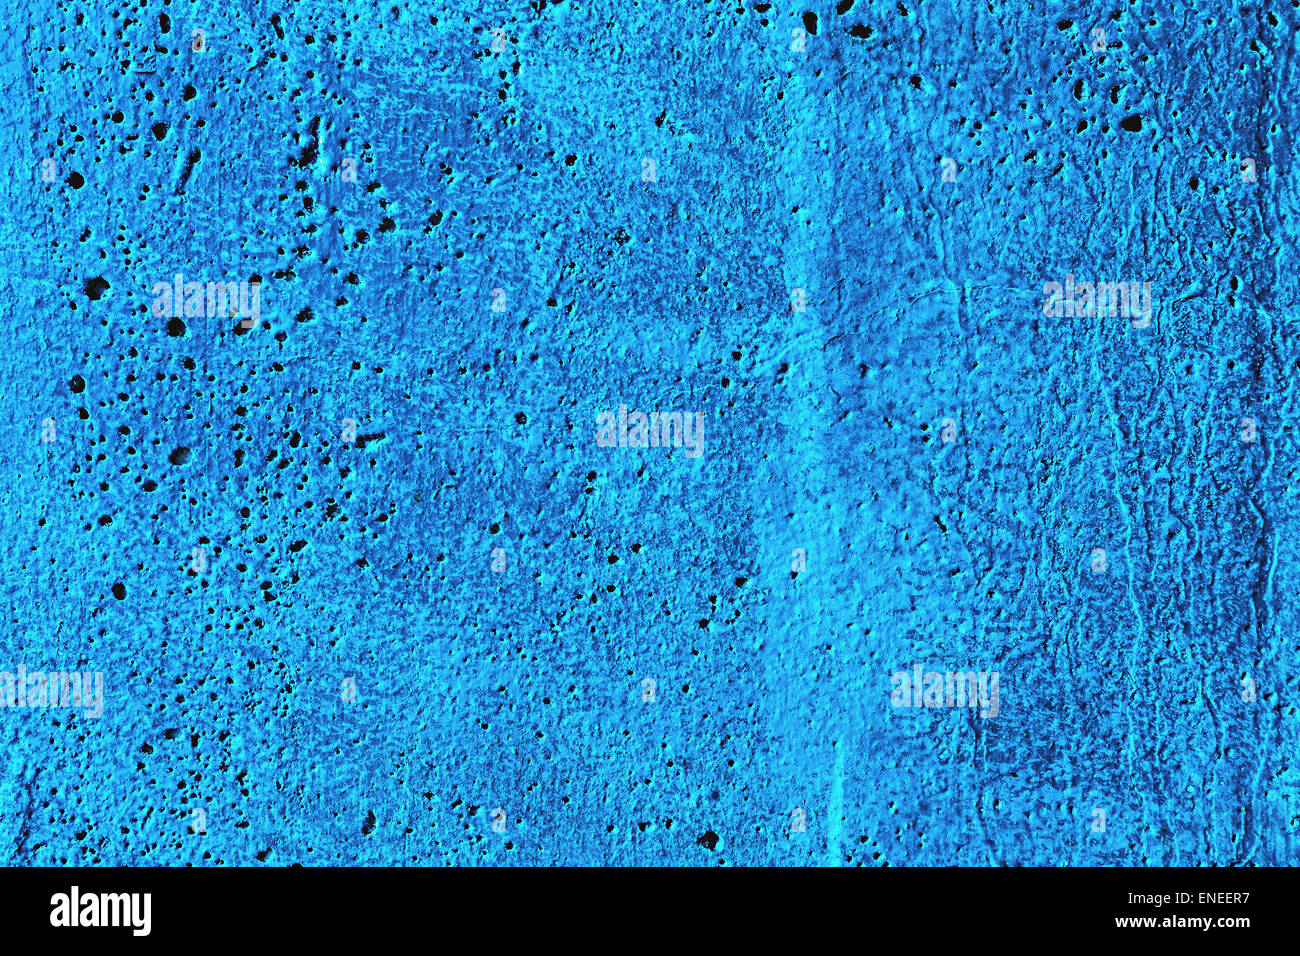 Grunge yeso cemento u hormigón textura de pared de color azul Foto de stock